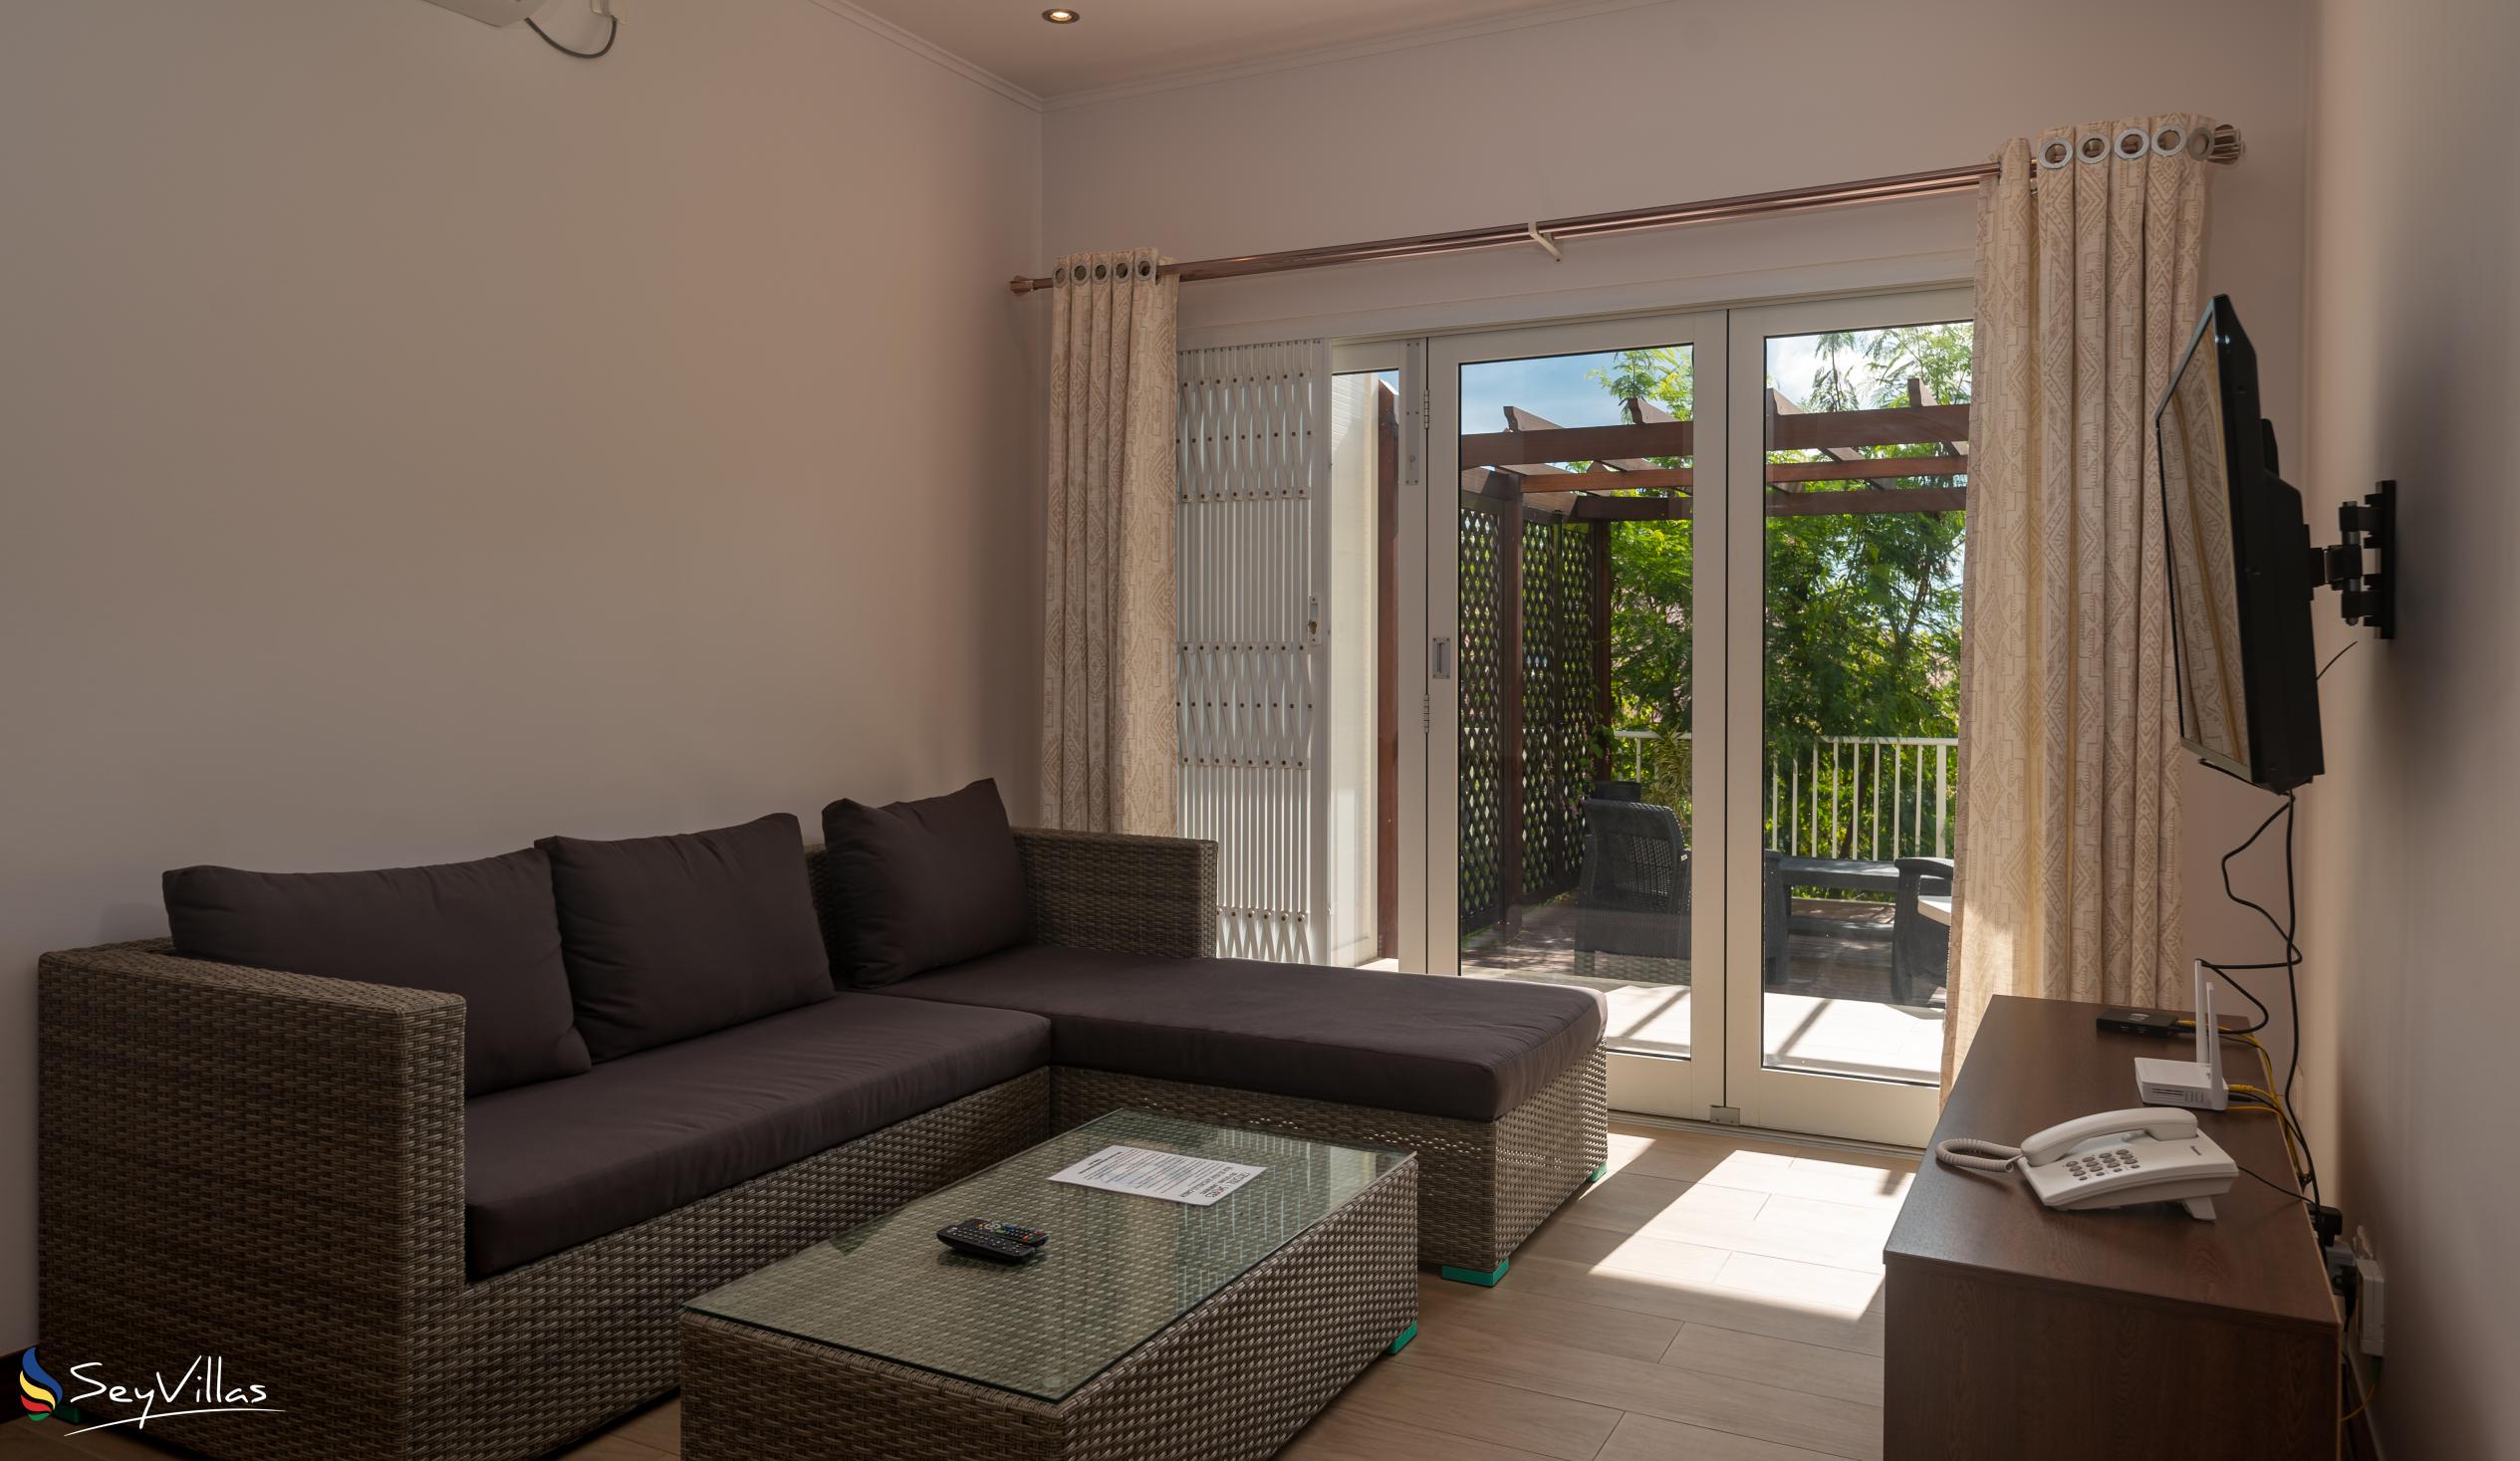 Foto 60: Crystal Shores Self Catering Apartments - Appartement avec vue sur le jardin - Mahé (Seychelles)